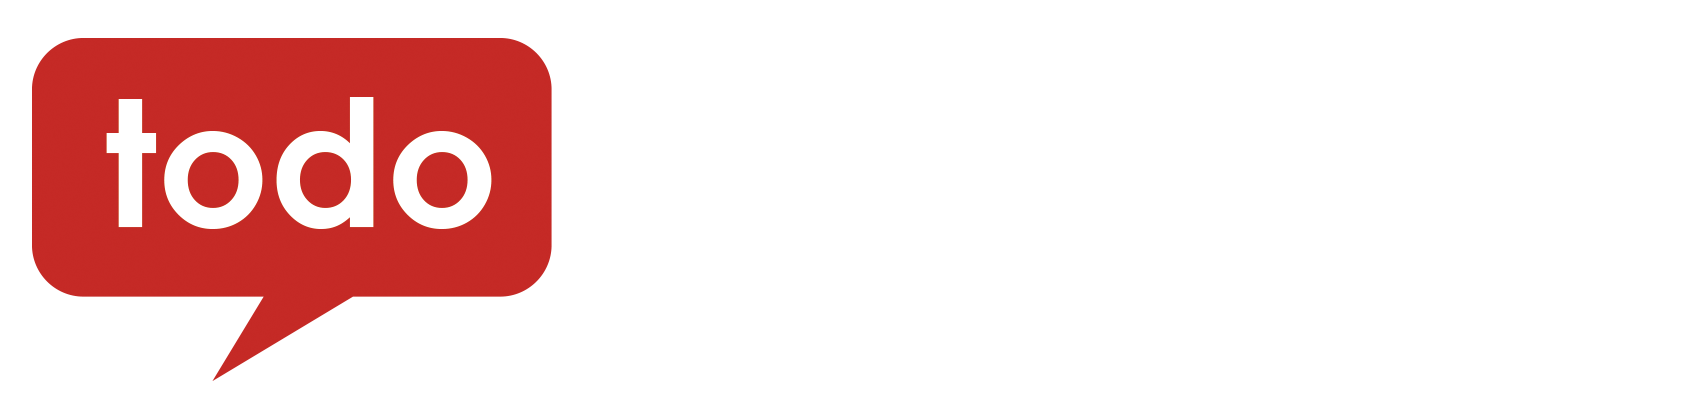 to do designs logo